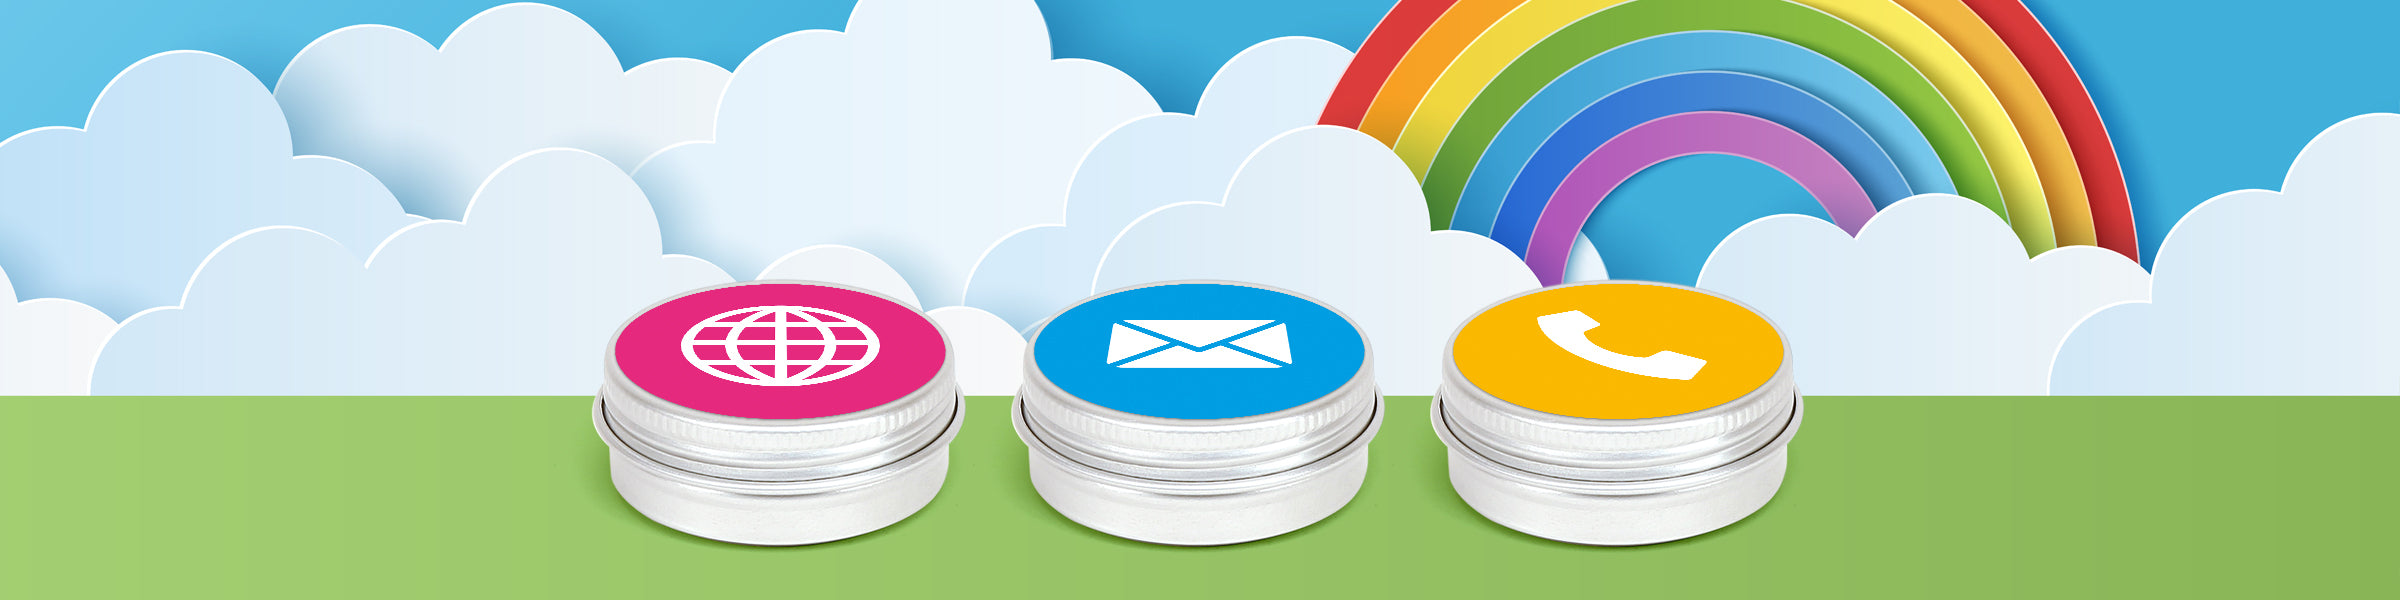 Drie zilveren aluminium blikken met schroefdeksel en labels met pictogrammen vor de website, e-mail en telefoon, tegen een achtergrond van wolken en een regenboog.